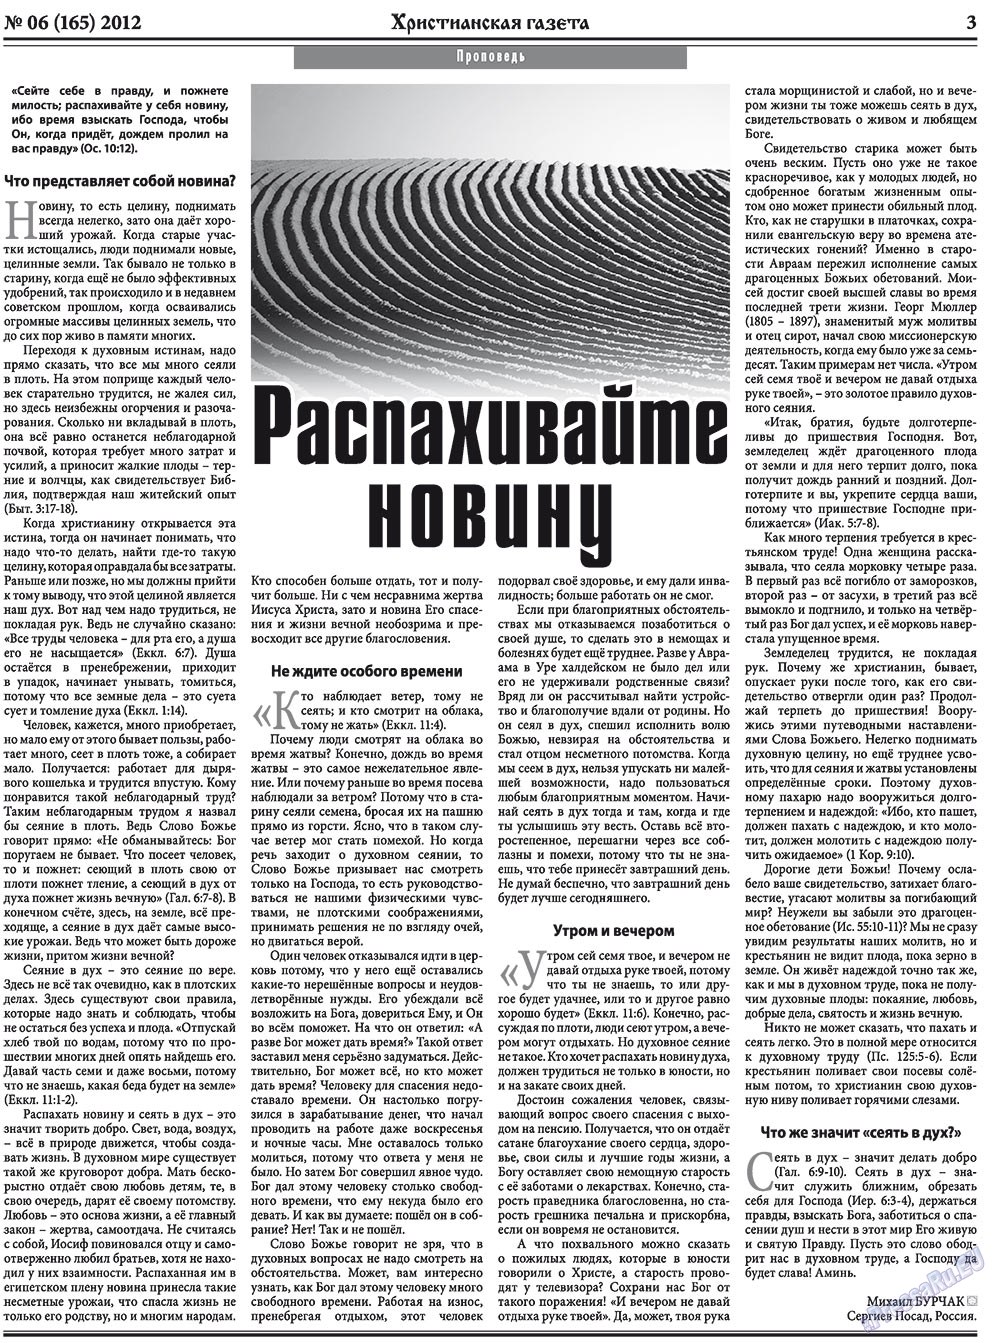 Христианская газета (газета). 2012 год, номер 6, стр. 3